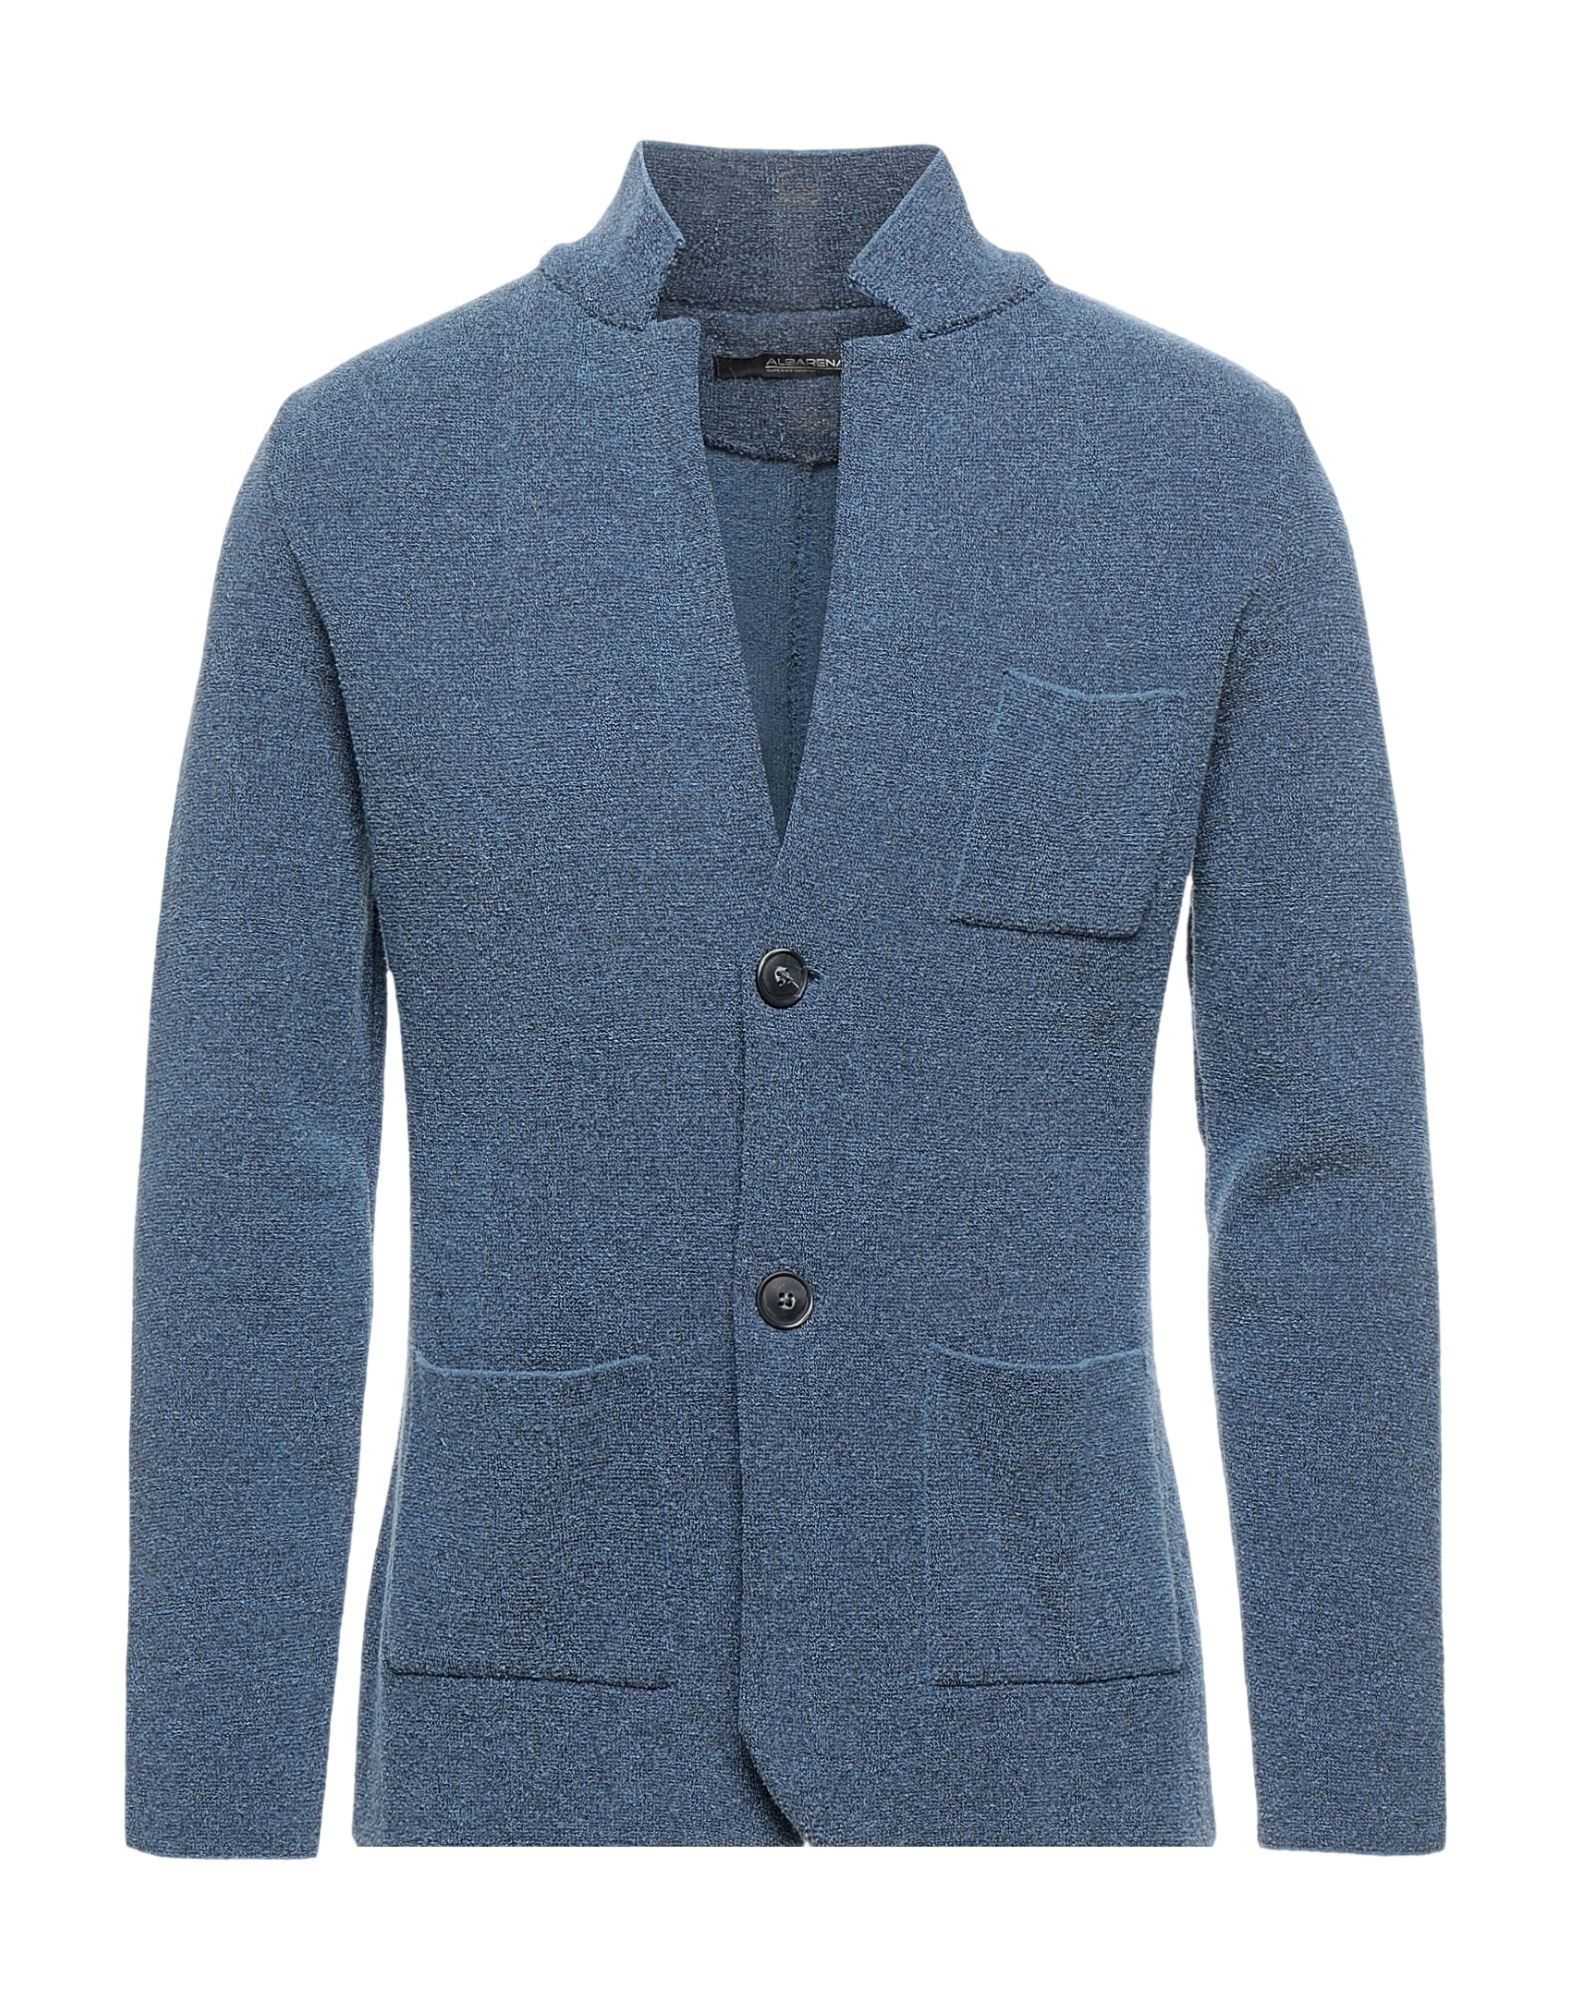 ALBARENA Suit jackets